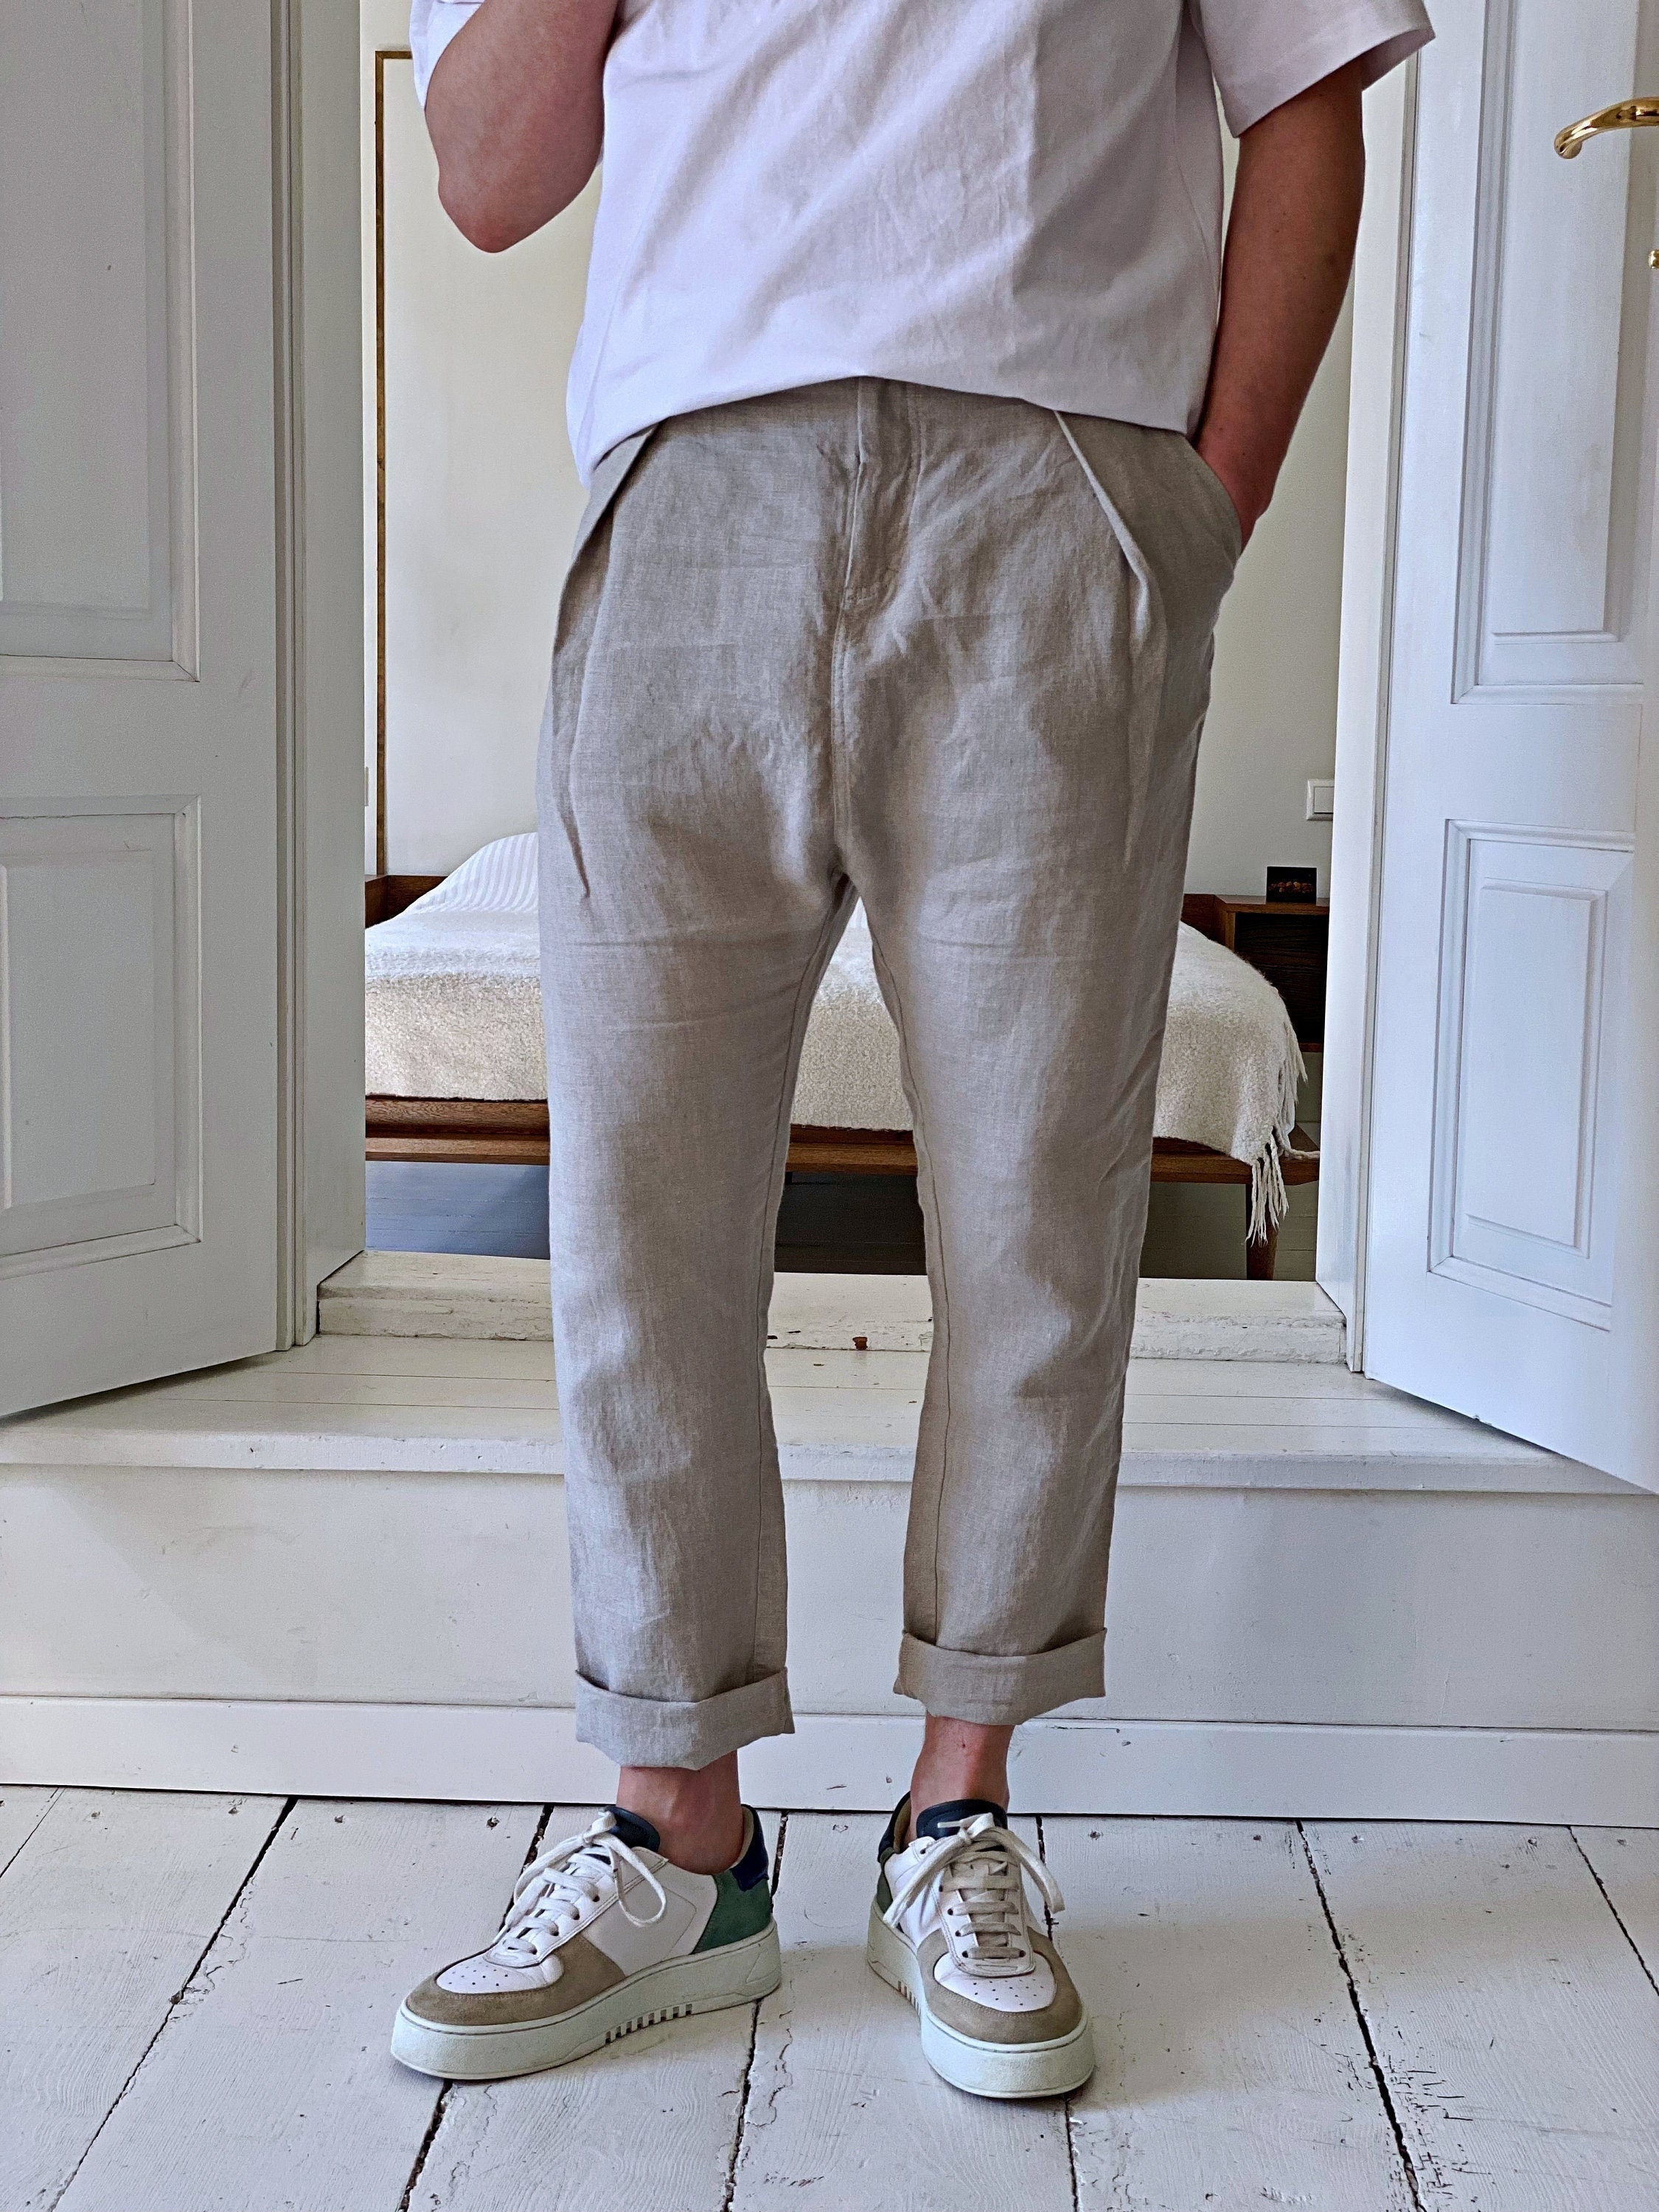 Topfans Pants Casual Pants,Fashion Summer Linen Pants for Men